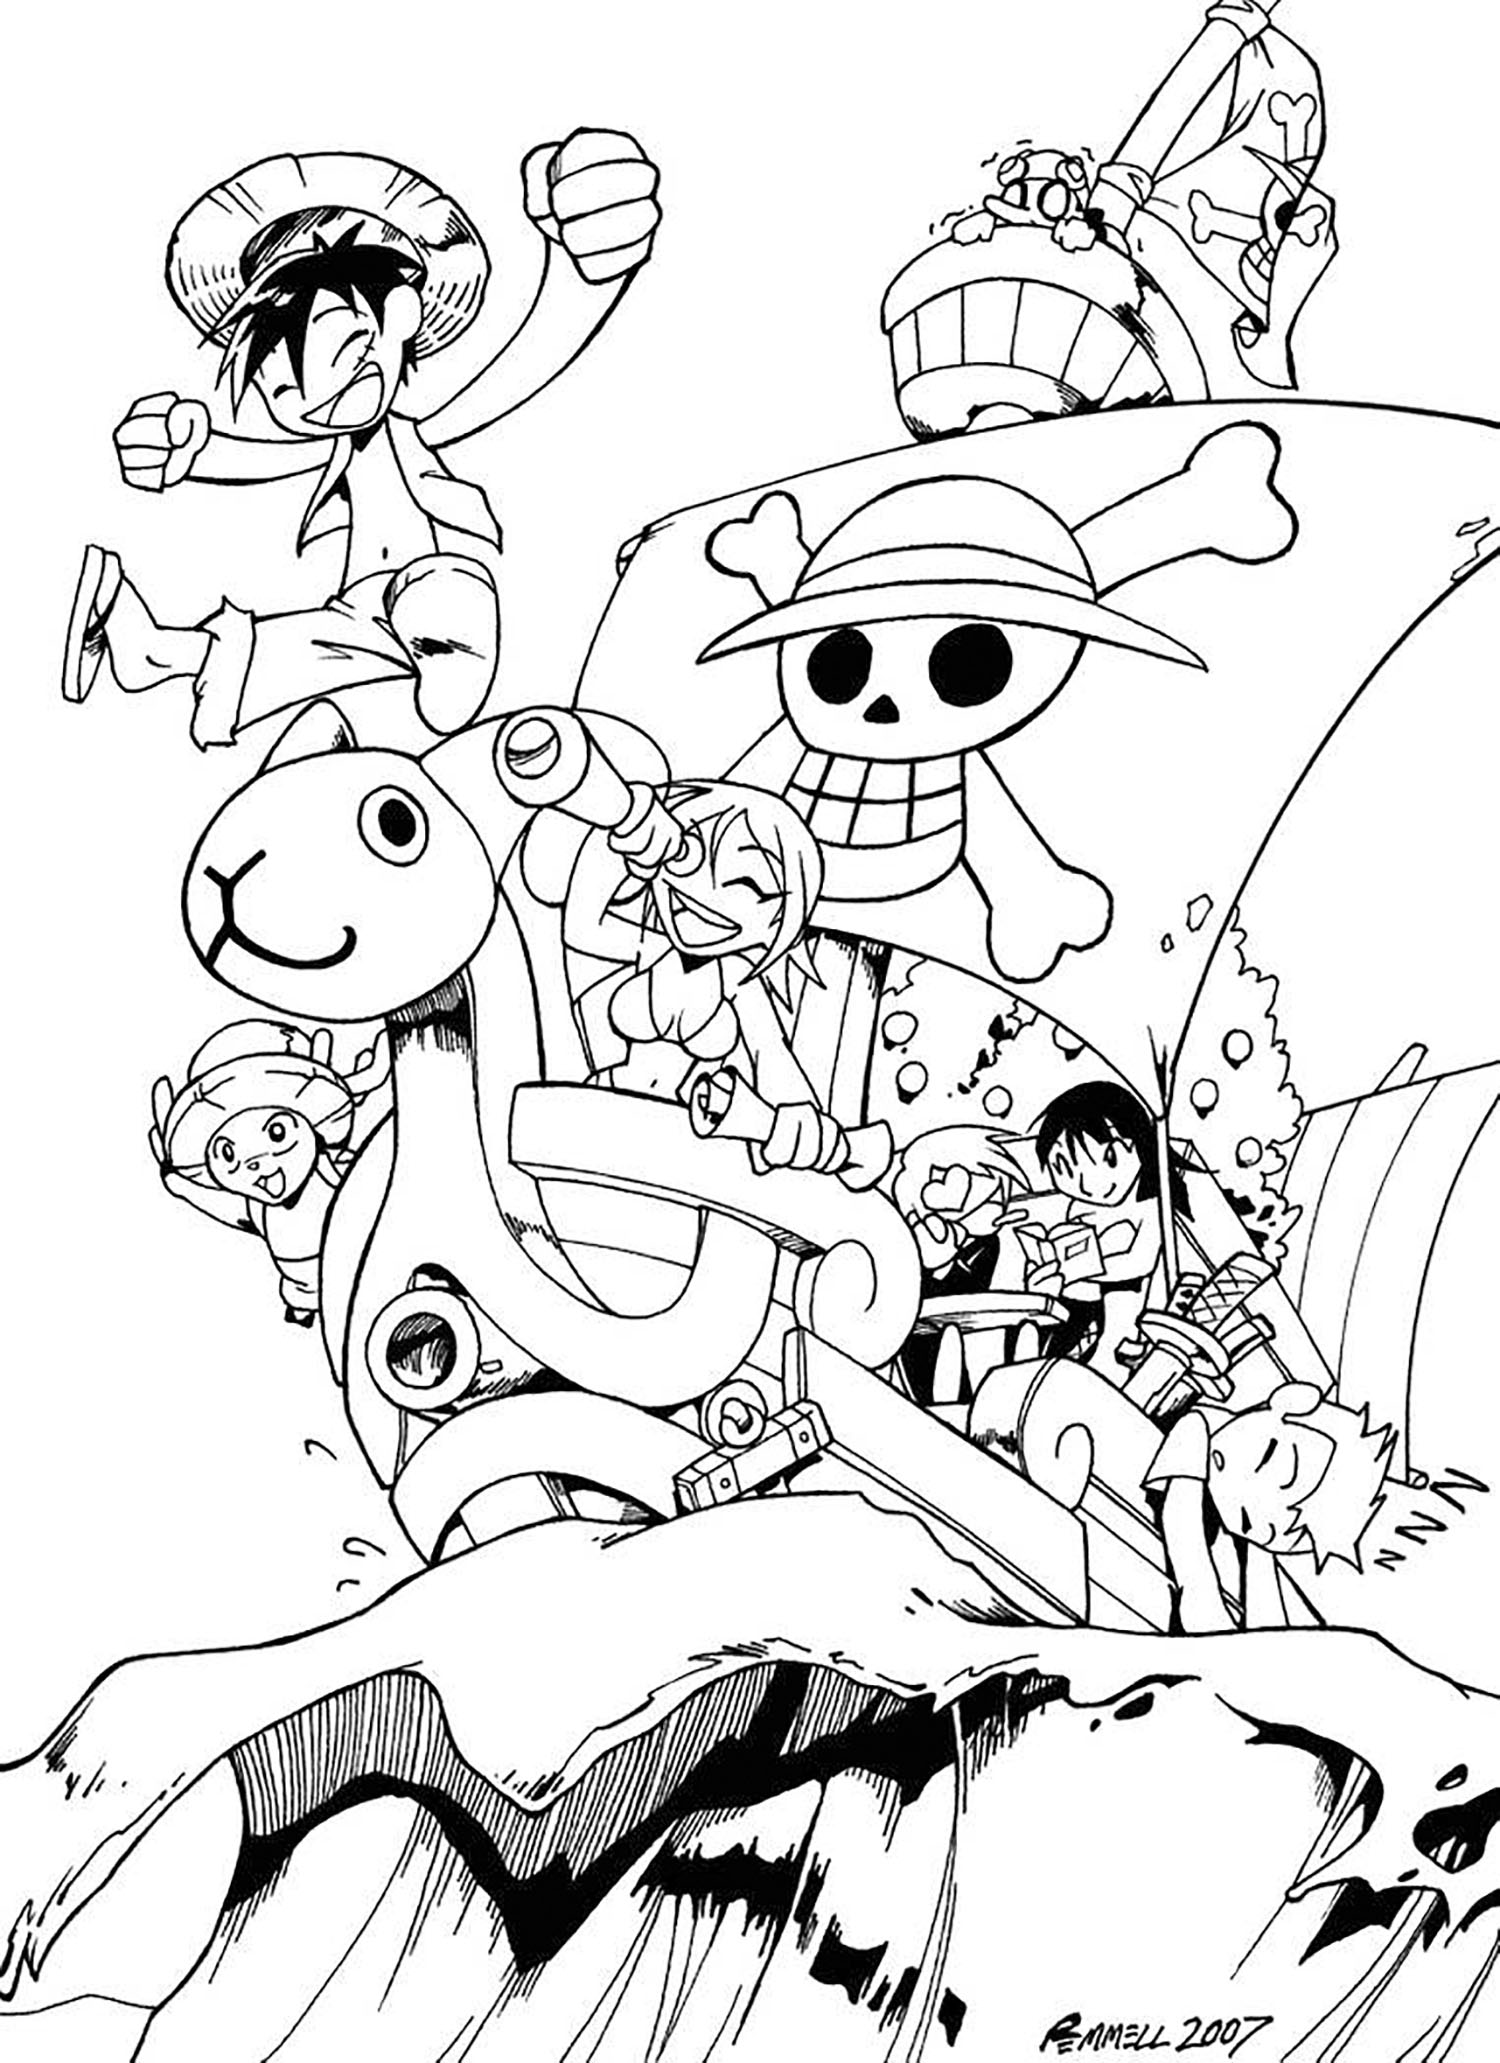 Dibujos para colorear de One Piece para imprimir - One Piece - Just Color Niños : Dibujos para colorear para niños